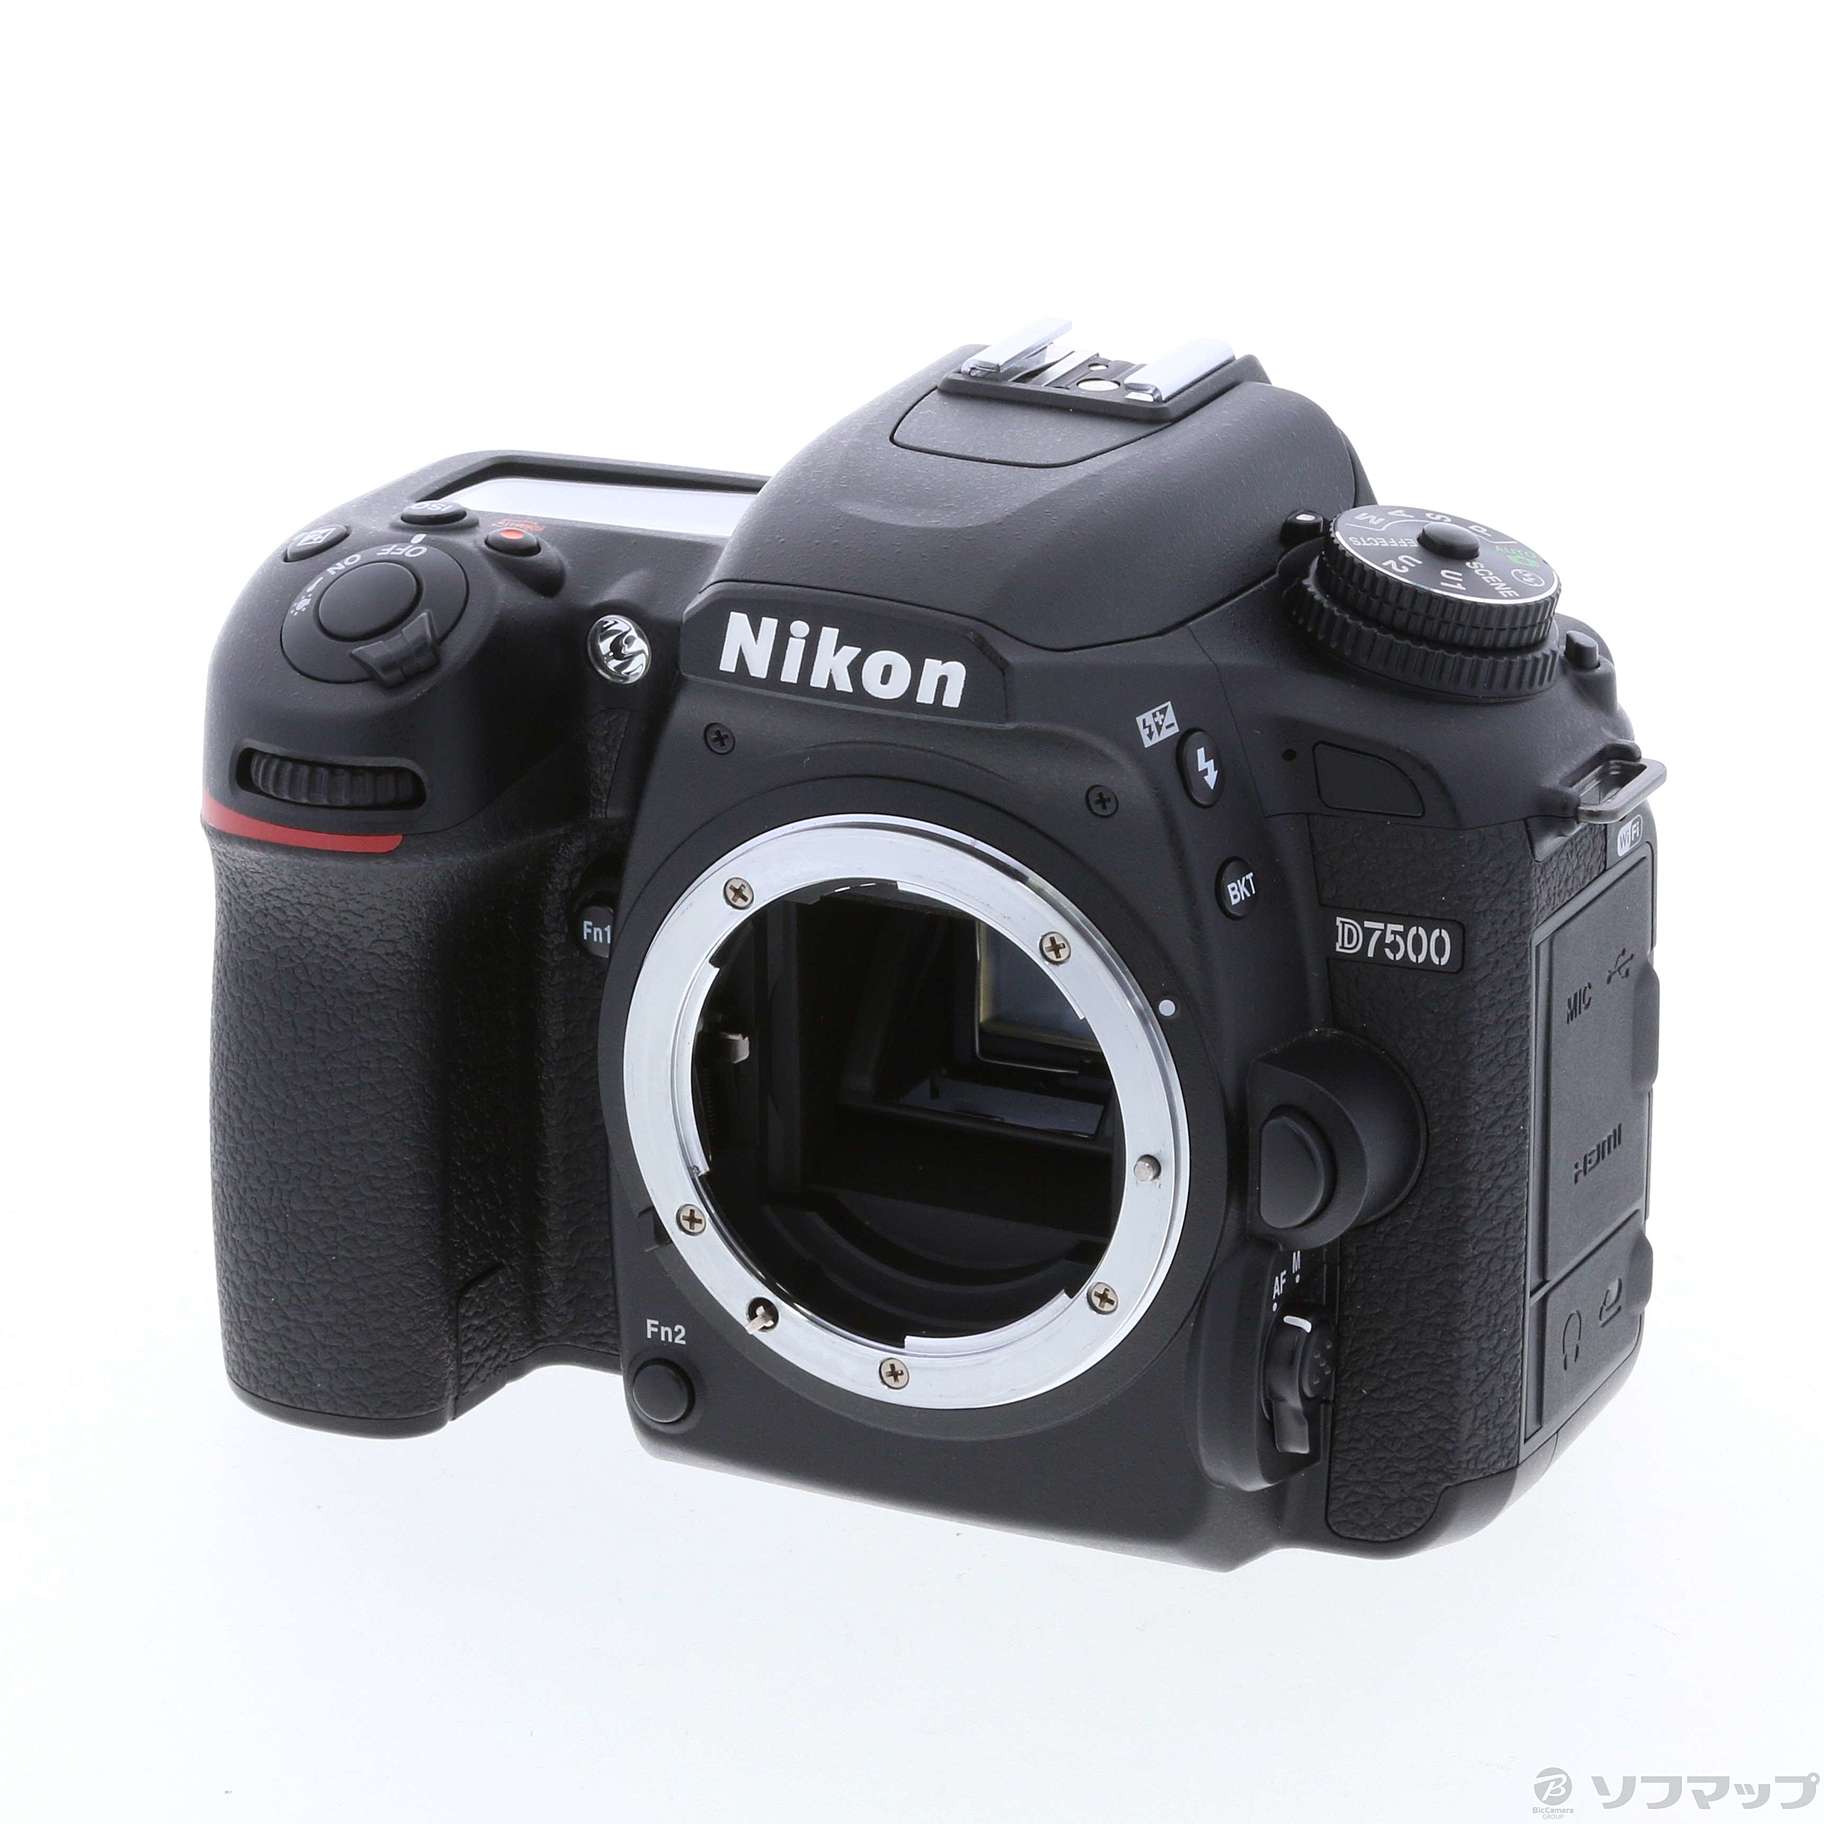 国内在庫 ニコン D800 ボディ 2012年3月発売 デジタル一眼レフカメラ 1 